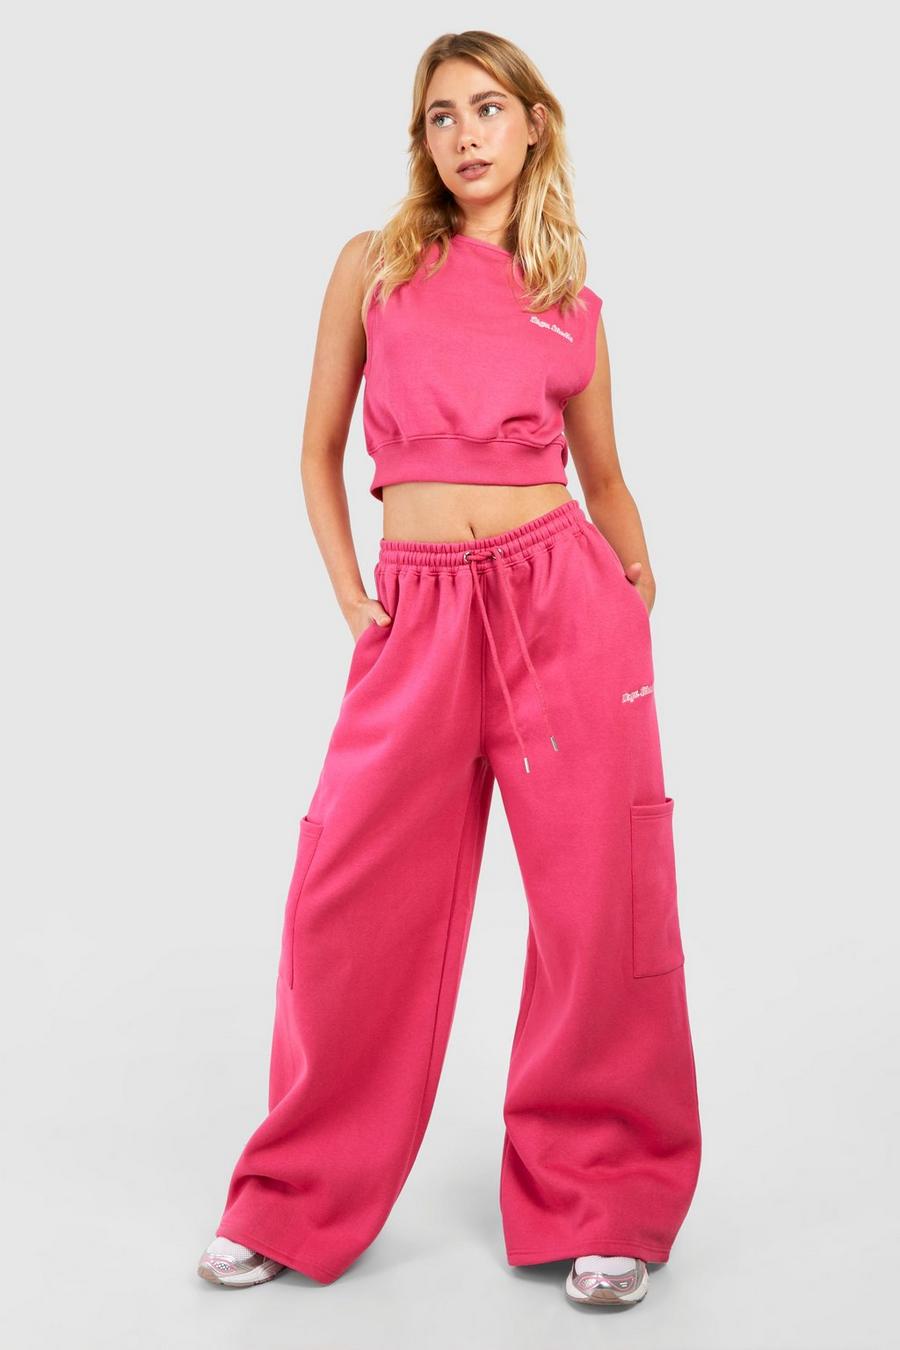 Pantaloni tuta Dsgn Studio con scritta Cargo e tasche Cargo, Hot pink